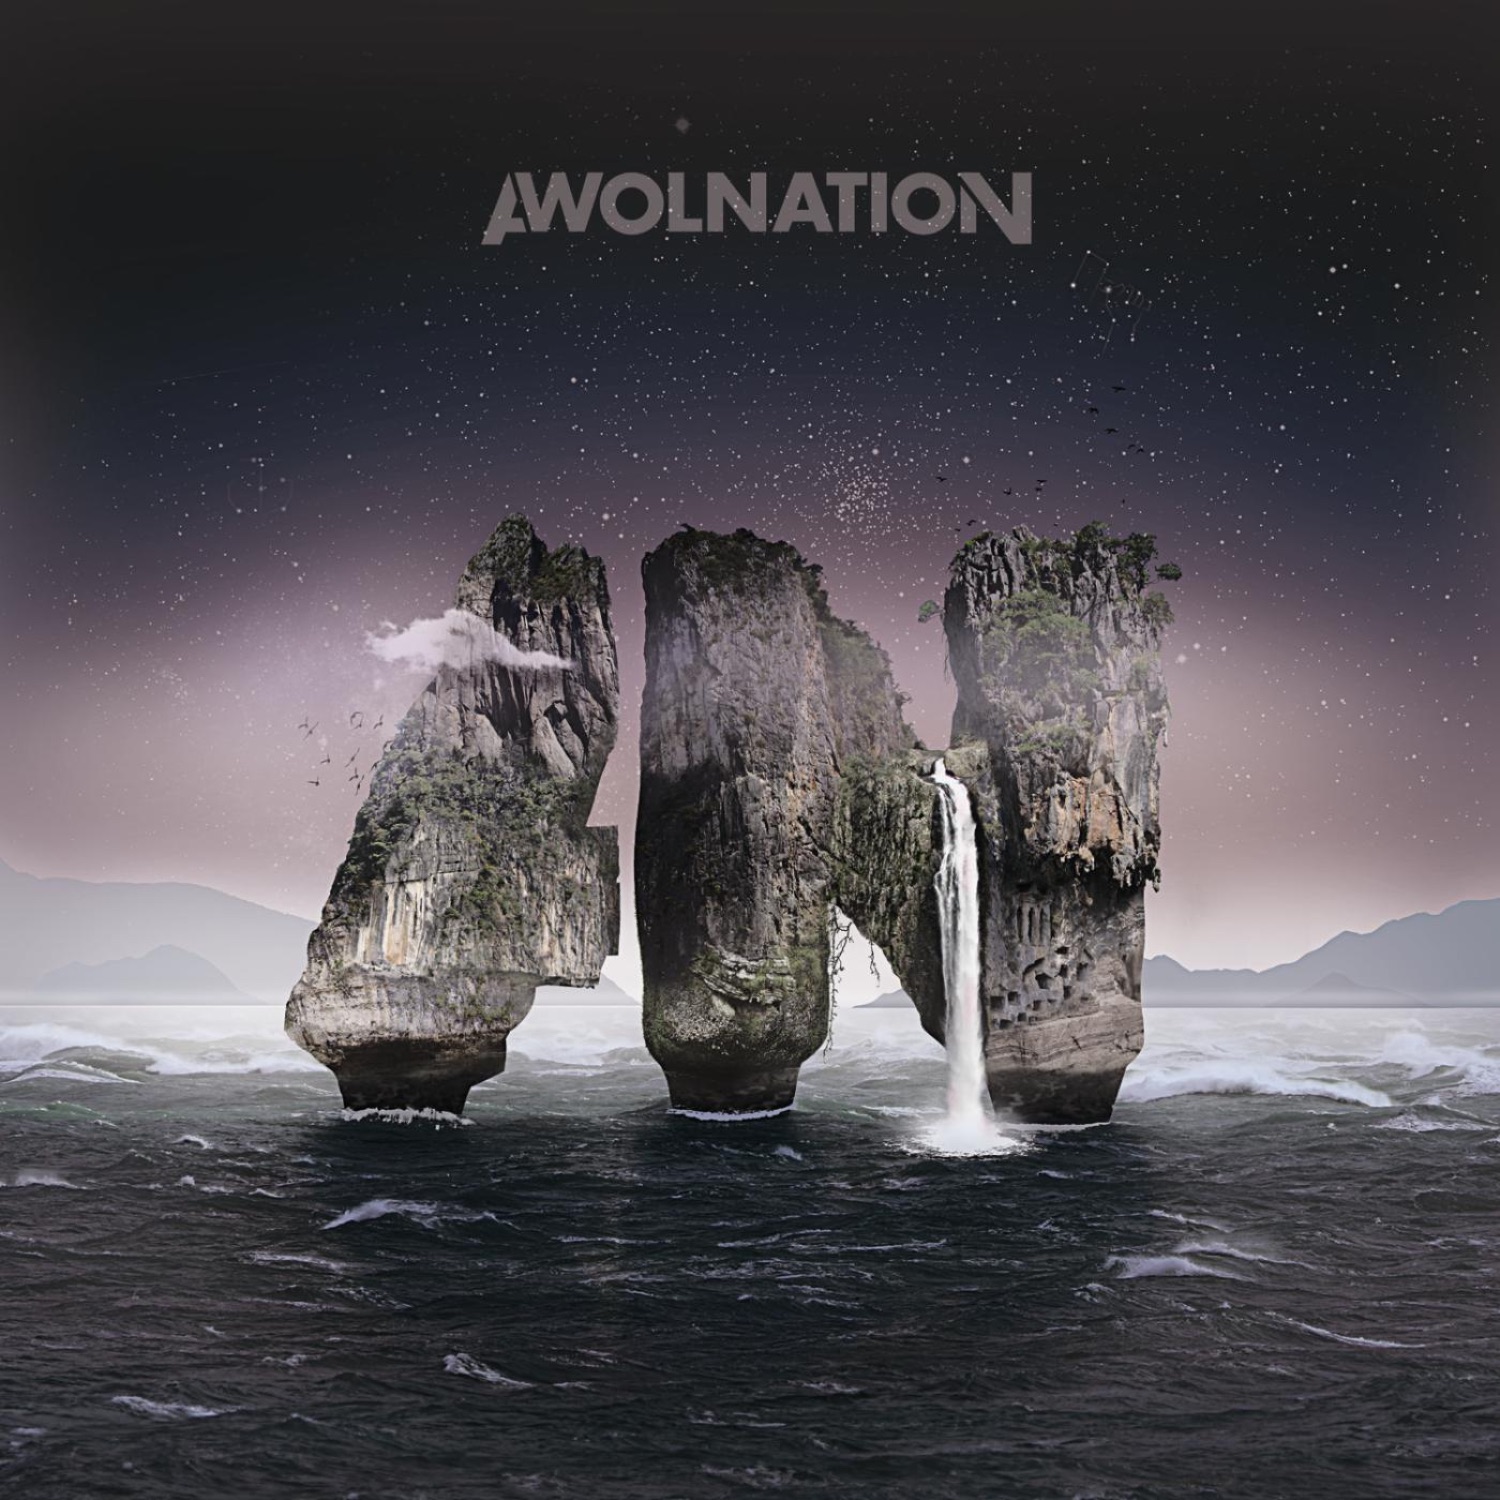 AWOLNATION - Sail - Single